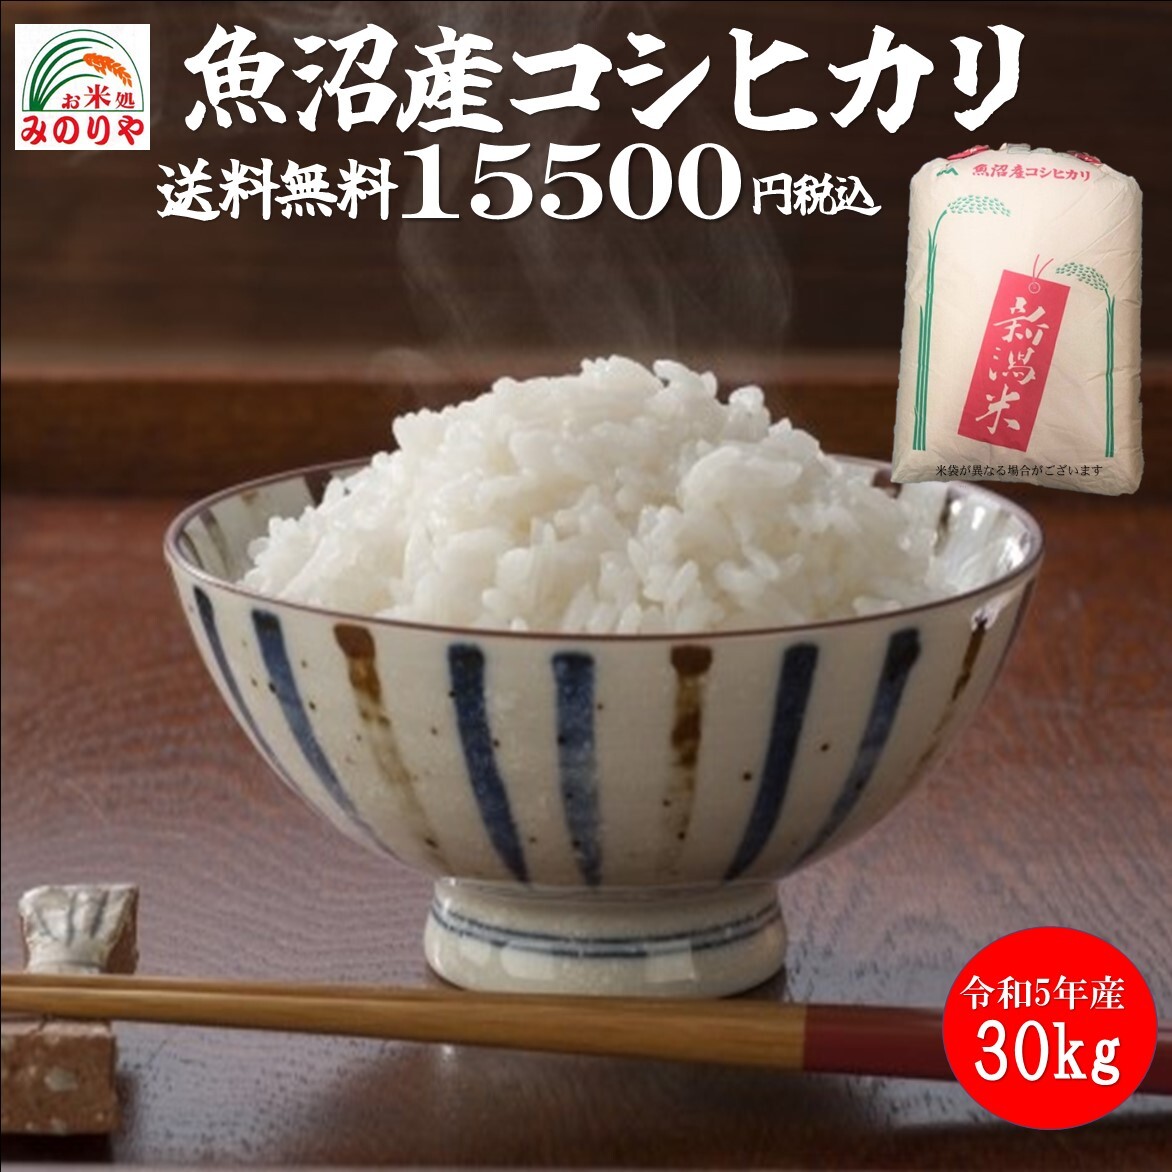 . мир 5 год производство Niigata рыба болото производство Koshihikari 30kg... рис рис специализация .. задний отметка .. бесплатная доставка 